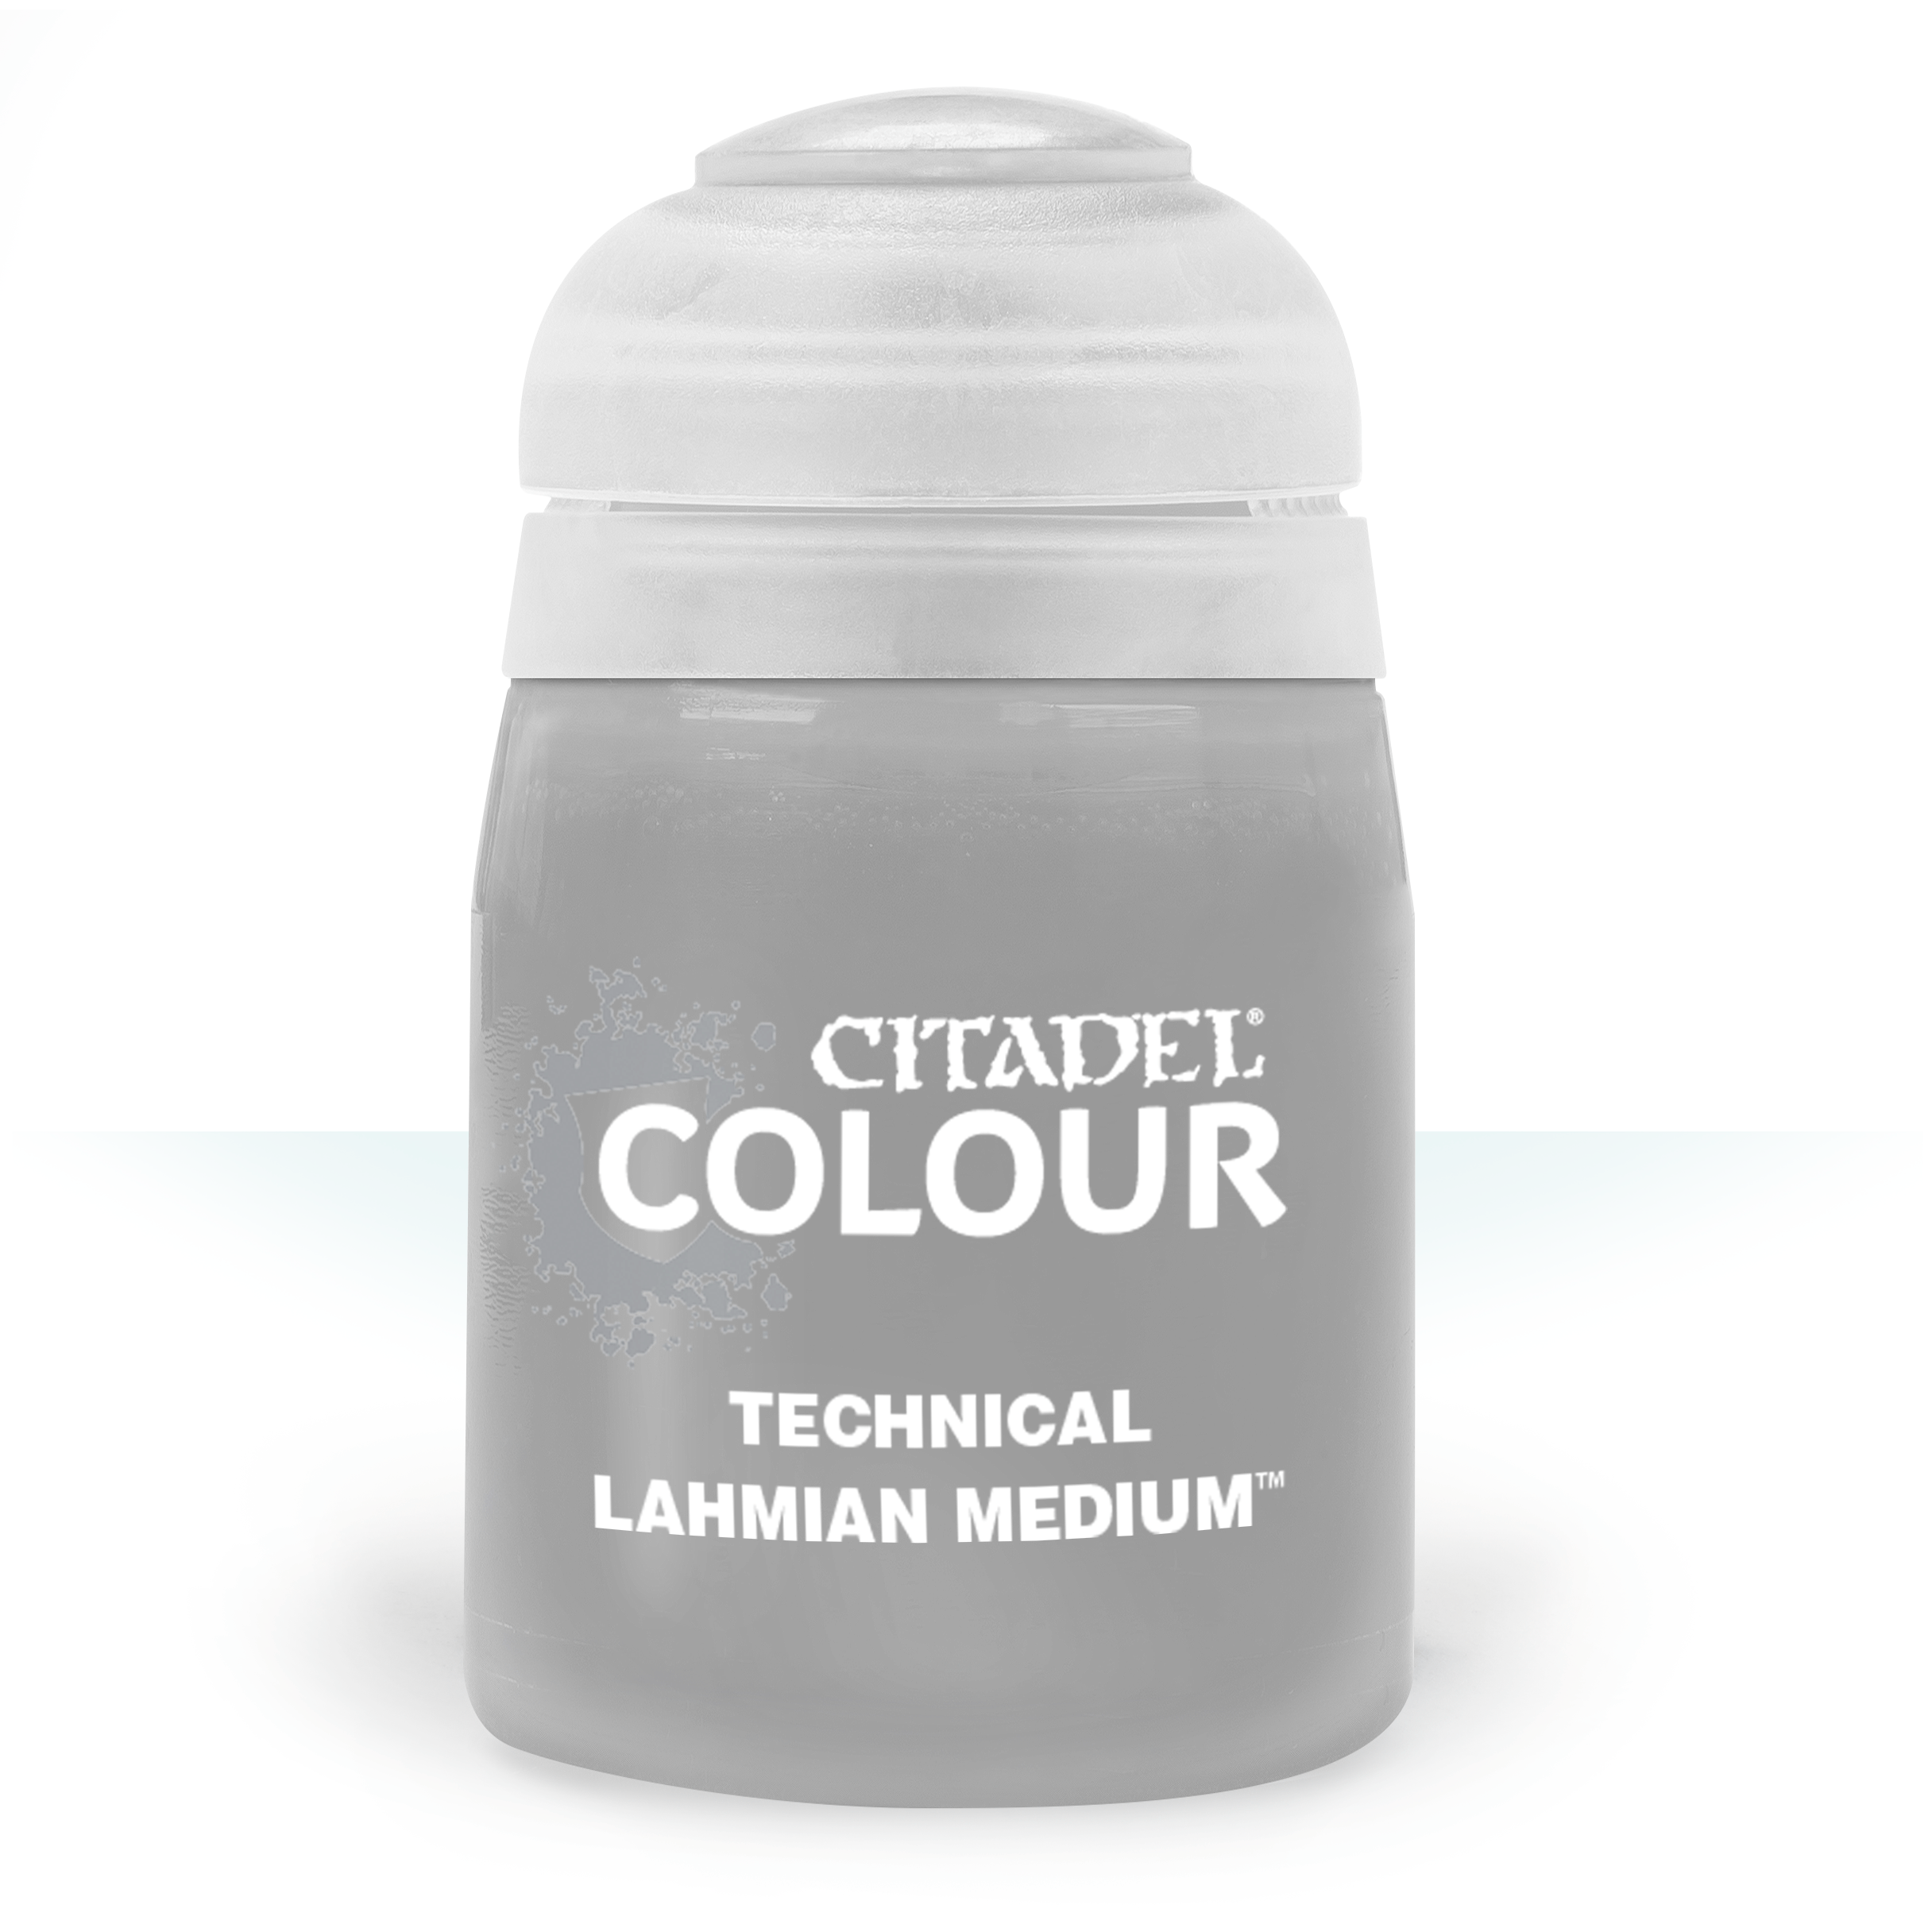 Technical Lahmian Medium - Citadel Colour